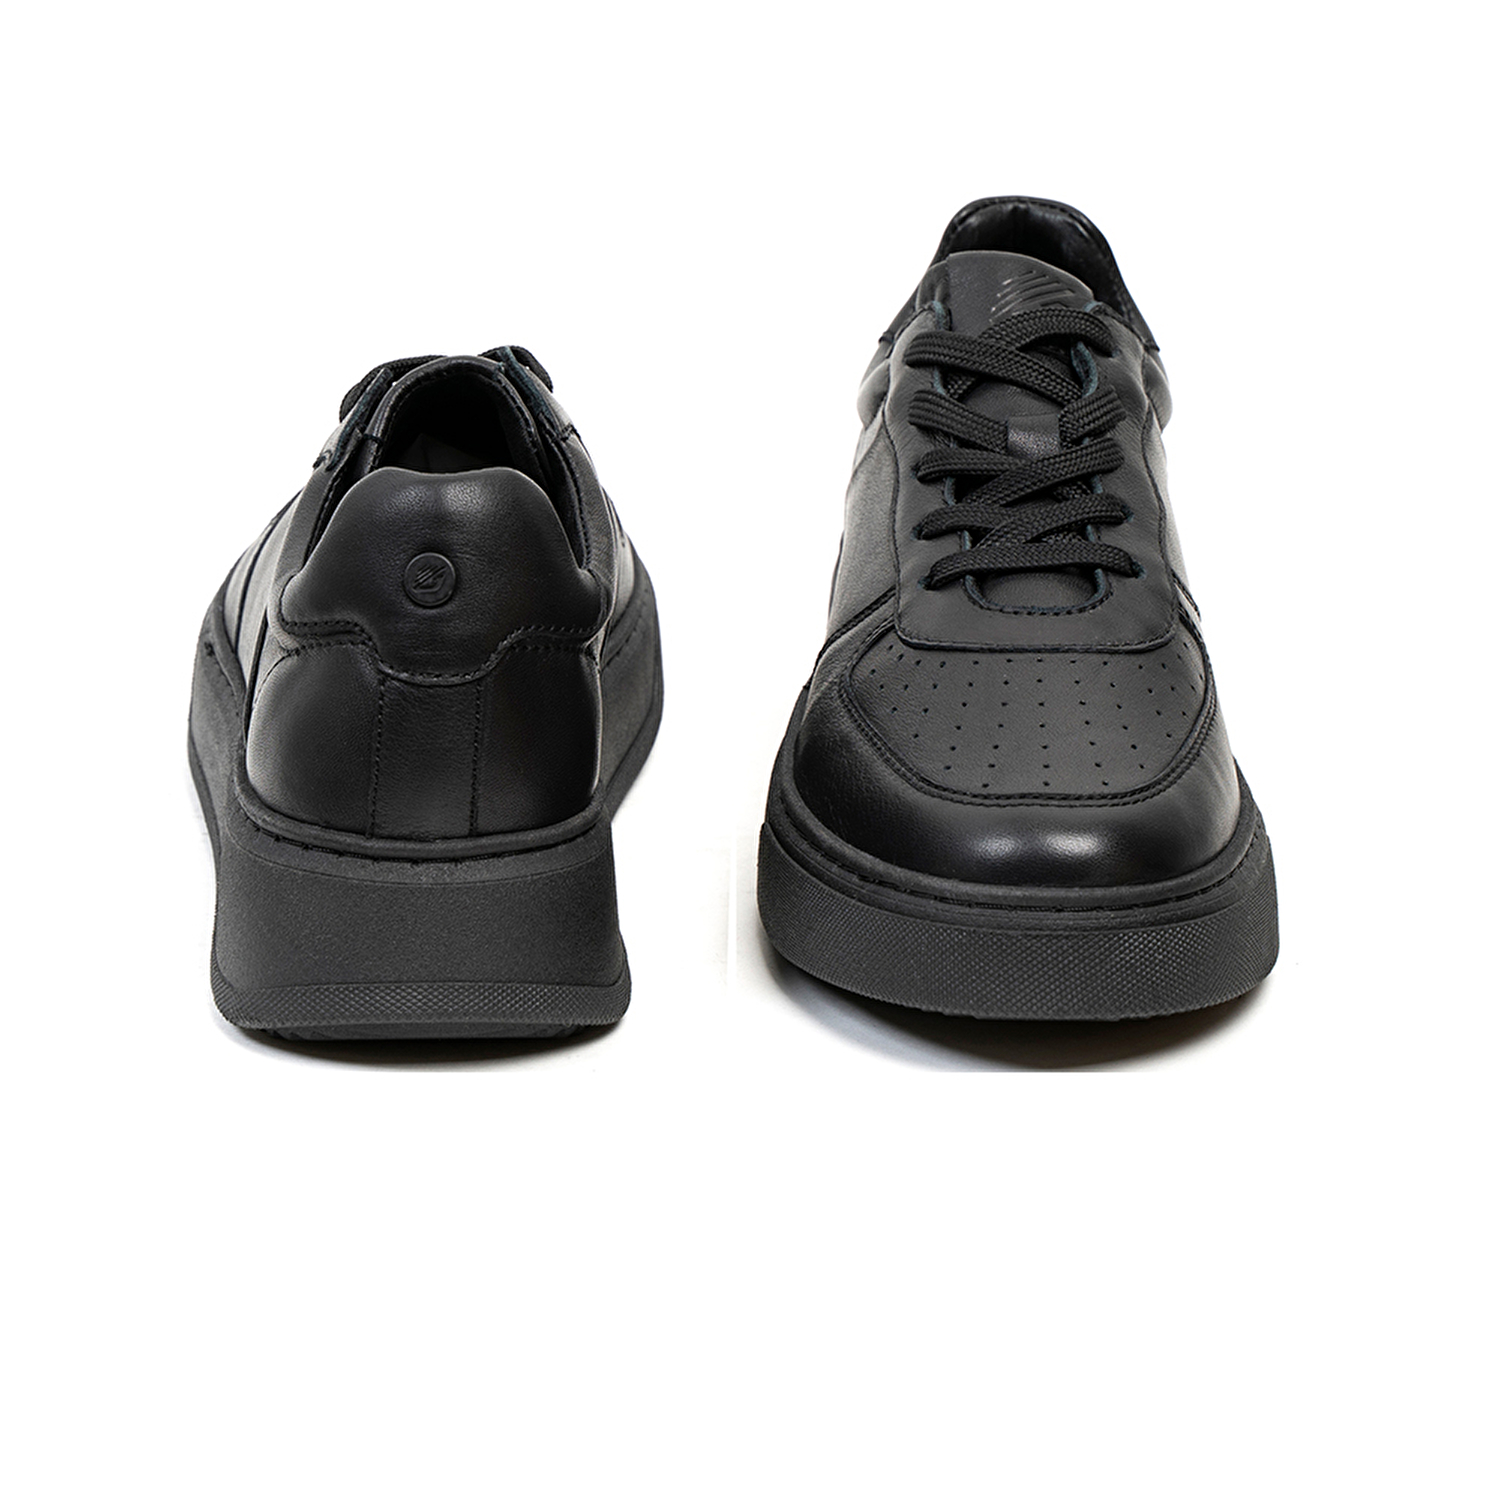 Kadın Siyah Hakiki Deri Sneaker Ayakkabı 2K2SA31350-6